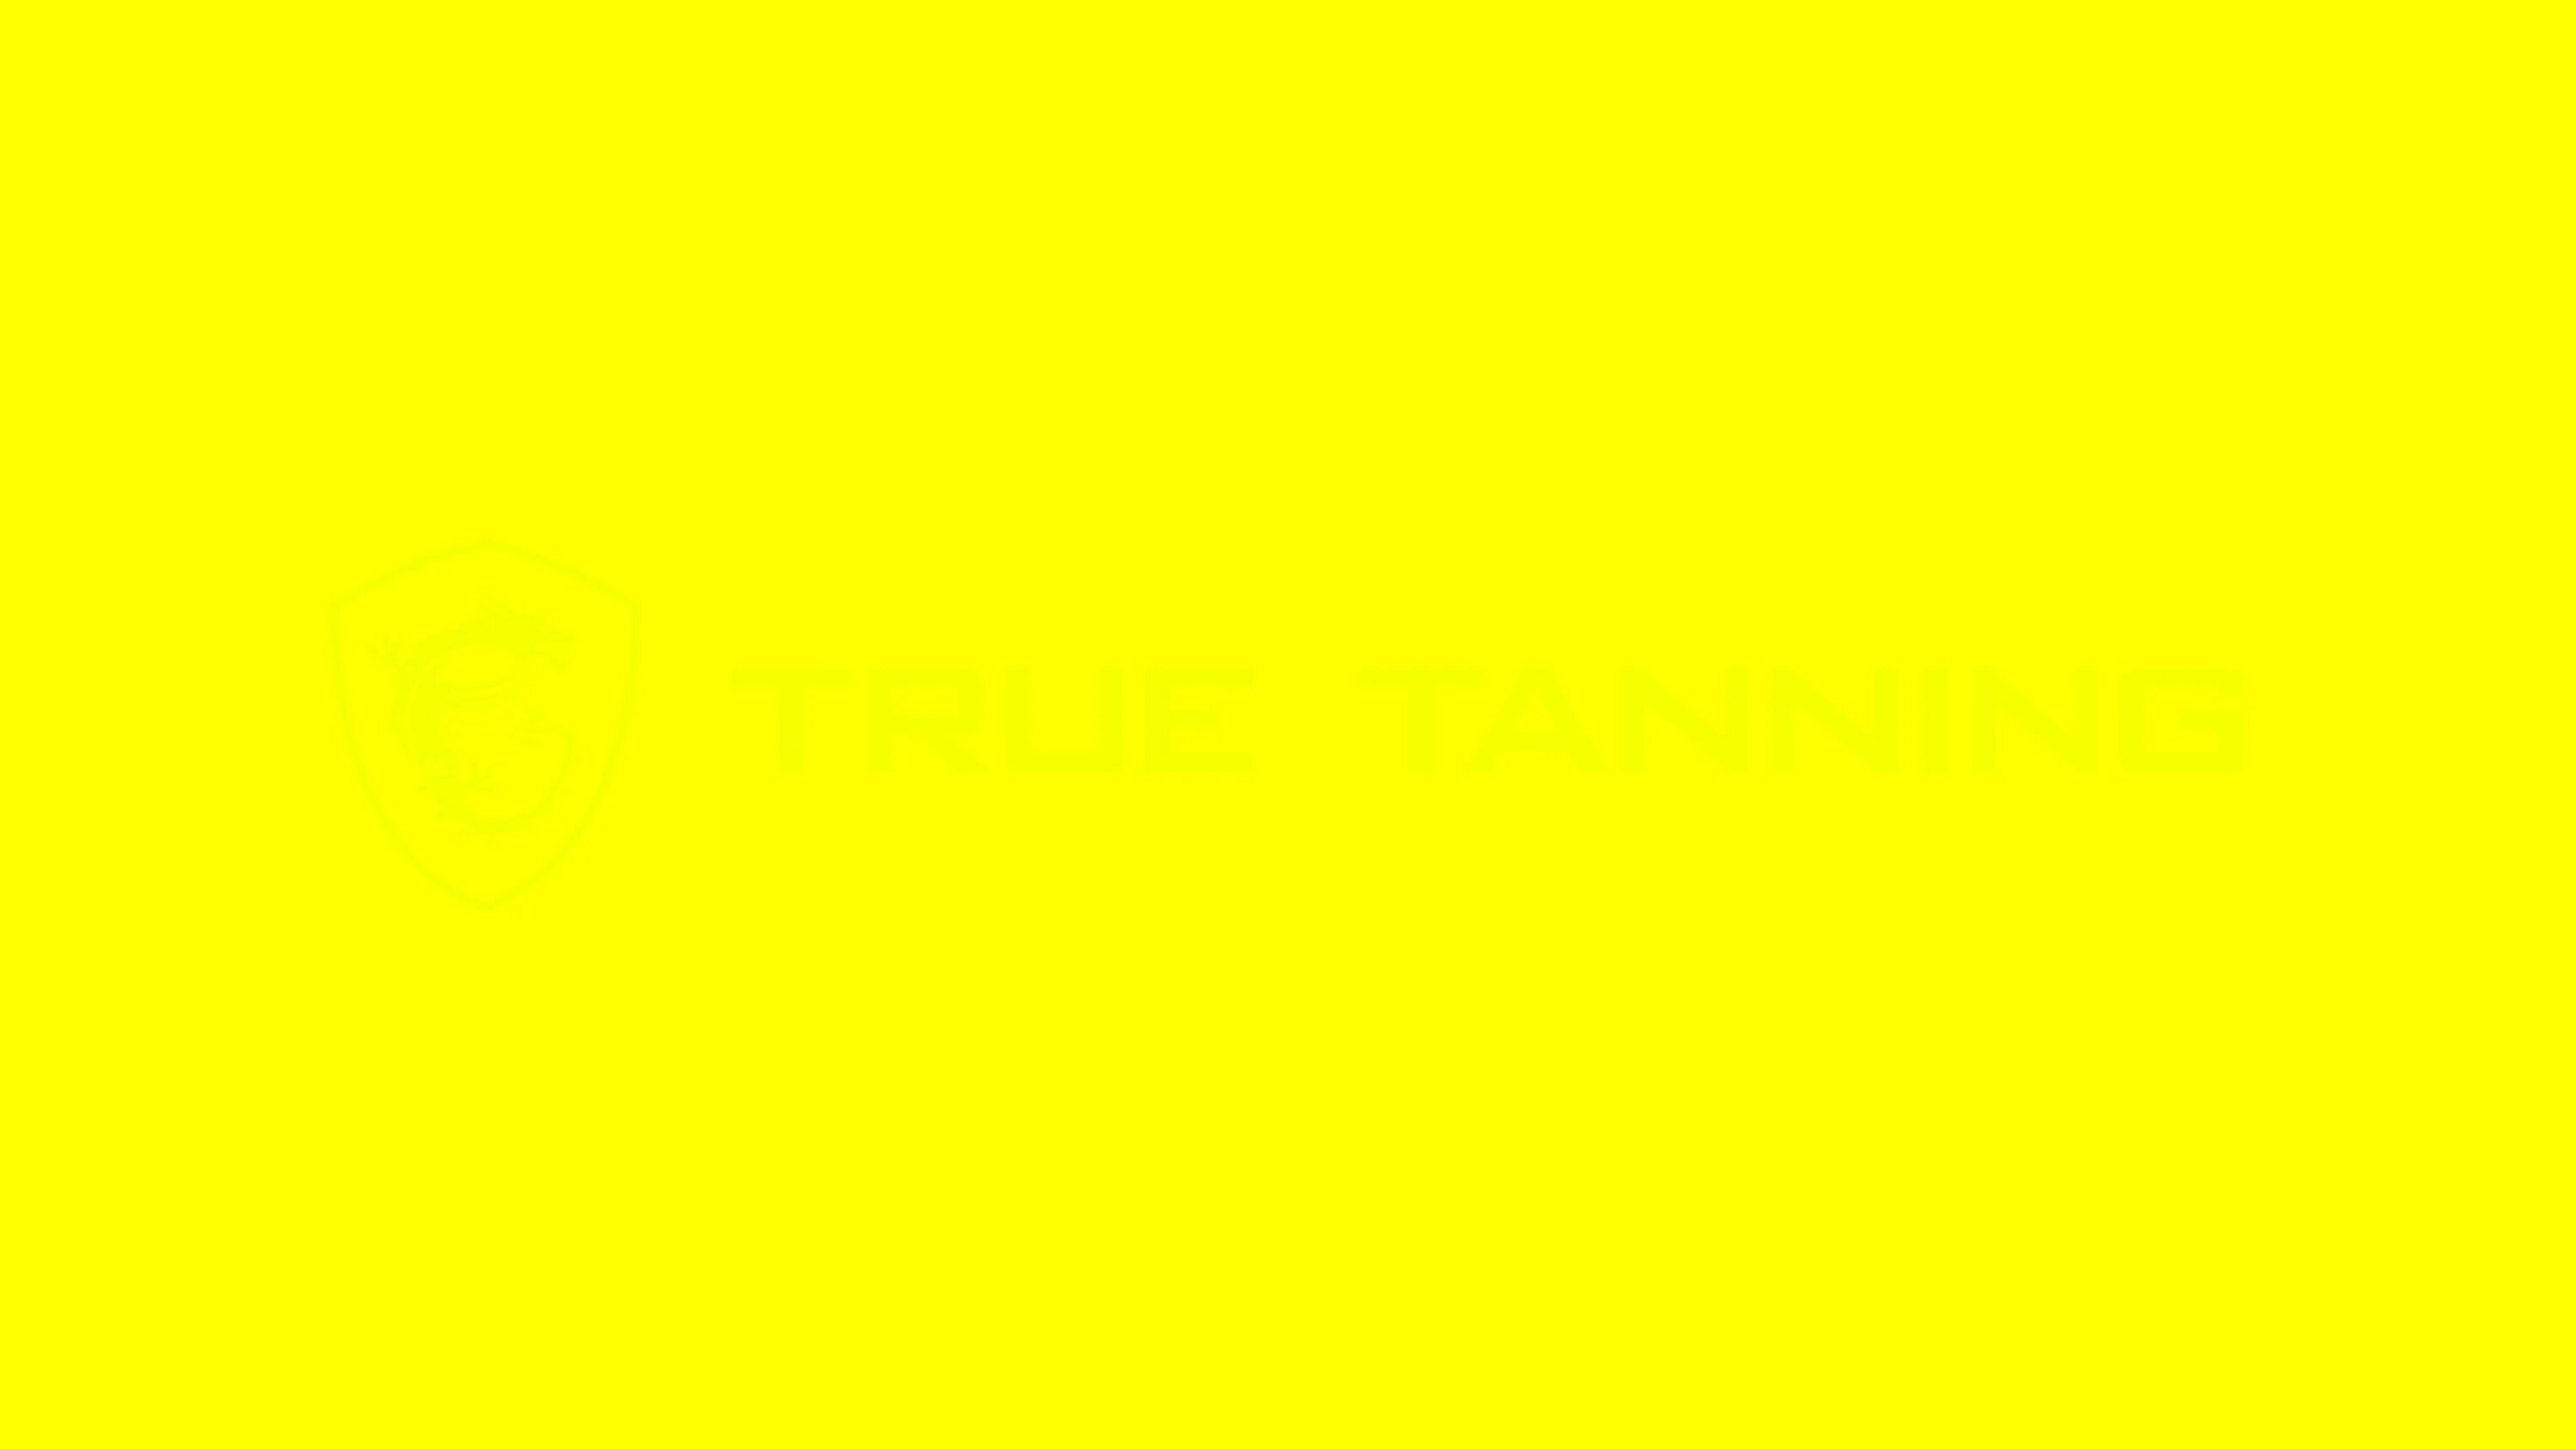 Тест проверки битых пикселей на телевизоре. Желтый цвет сплошной. Жёлтый фон без ничего. Жёлтый фон однотонный яркий. Фон для проверки битых пикселей.